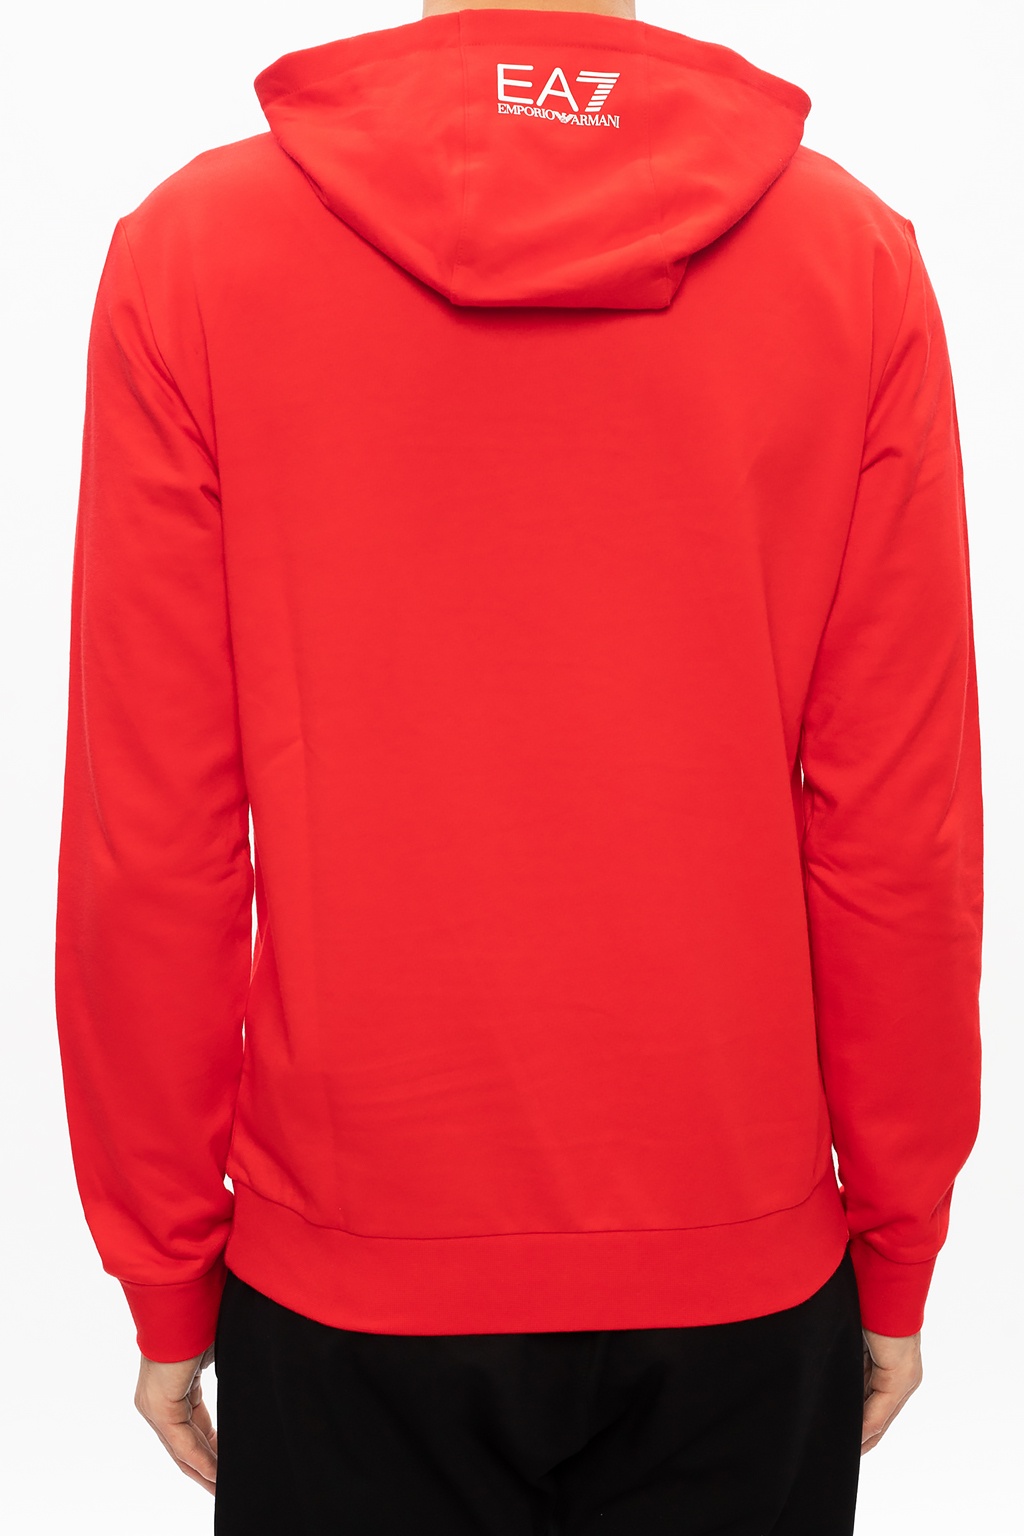 armani red hoodie